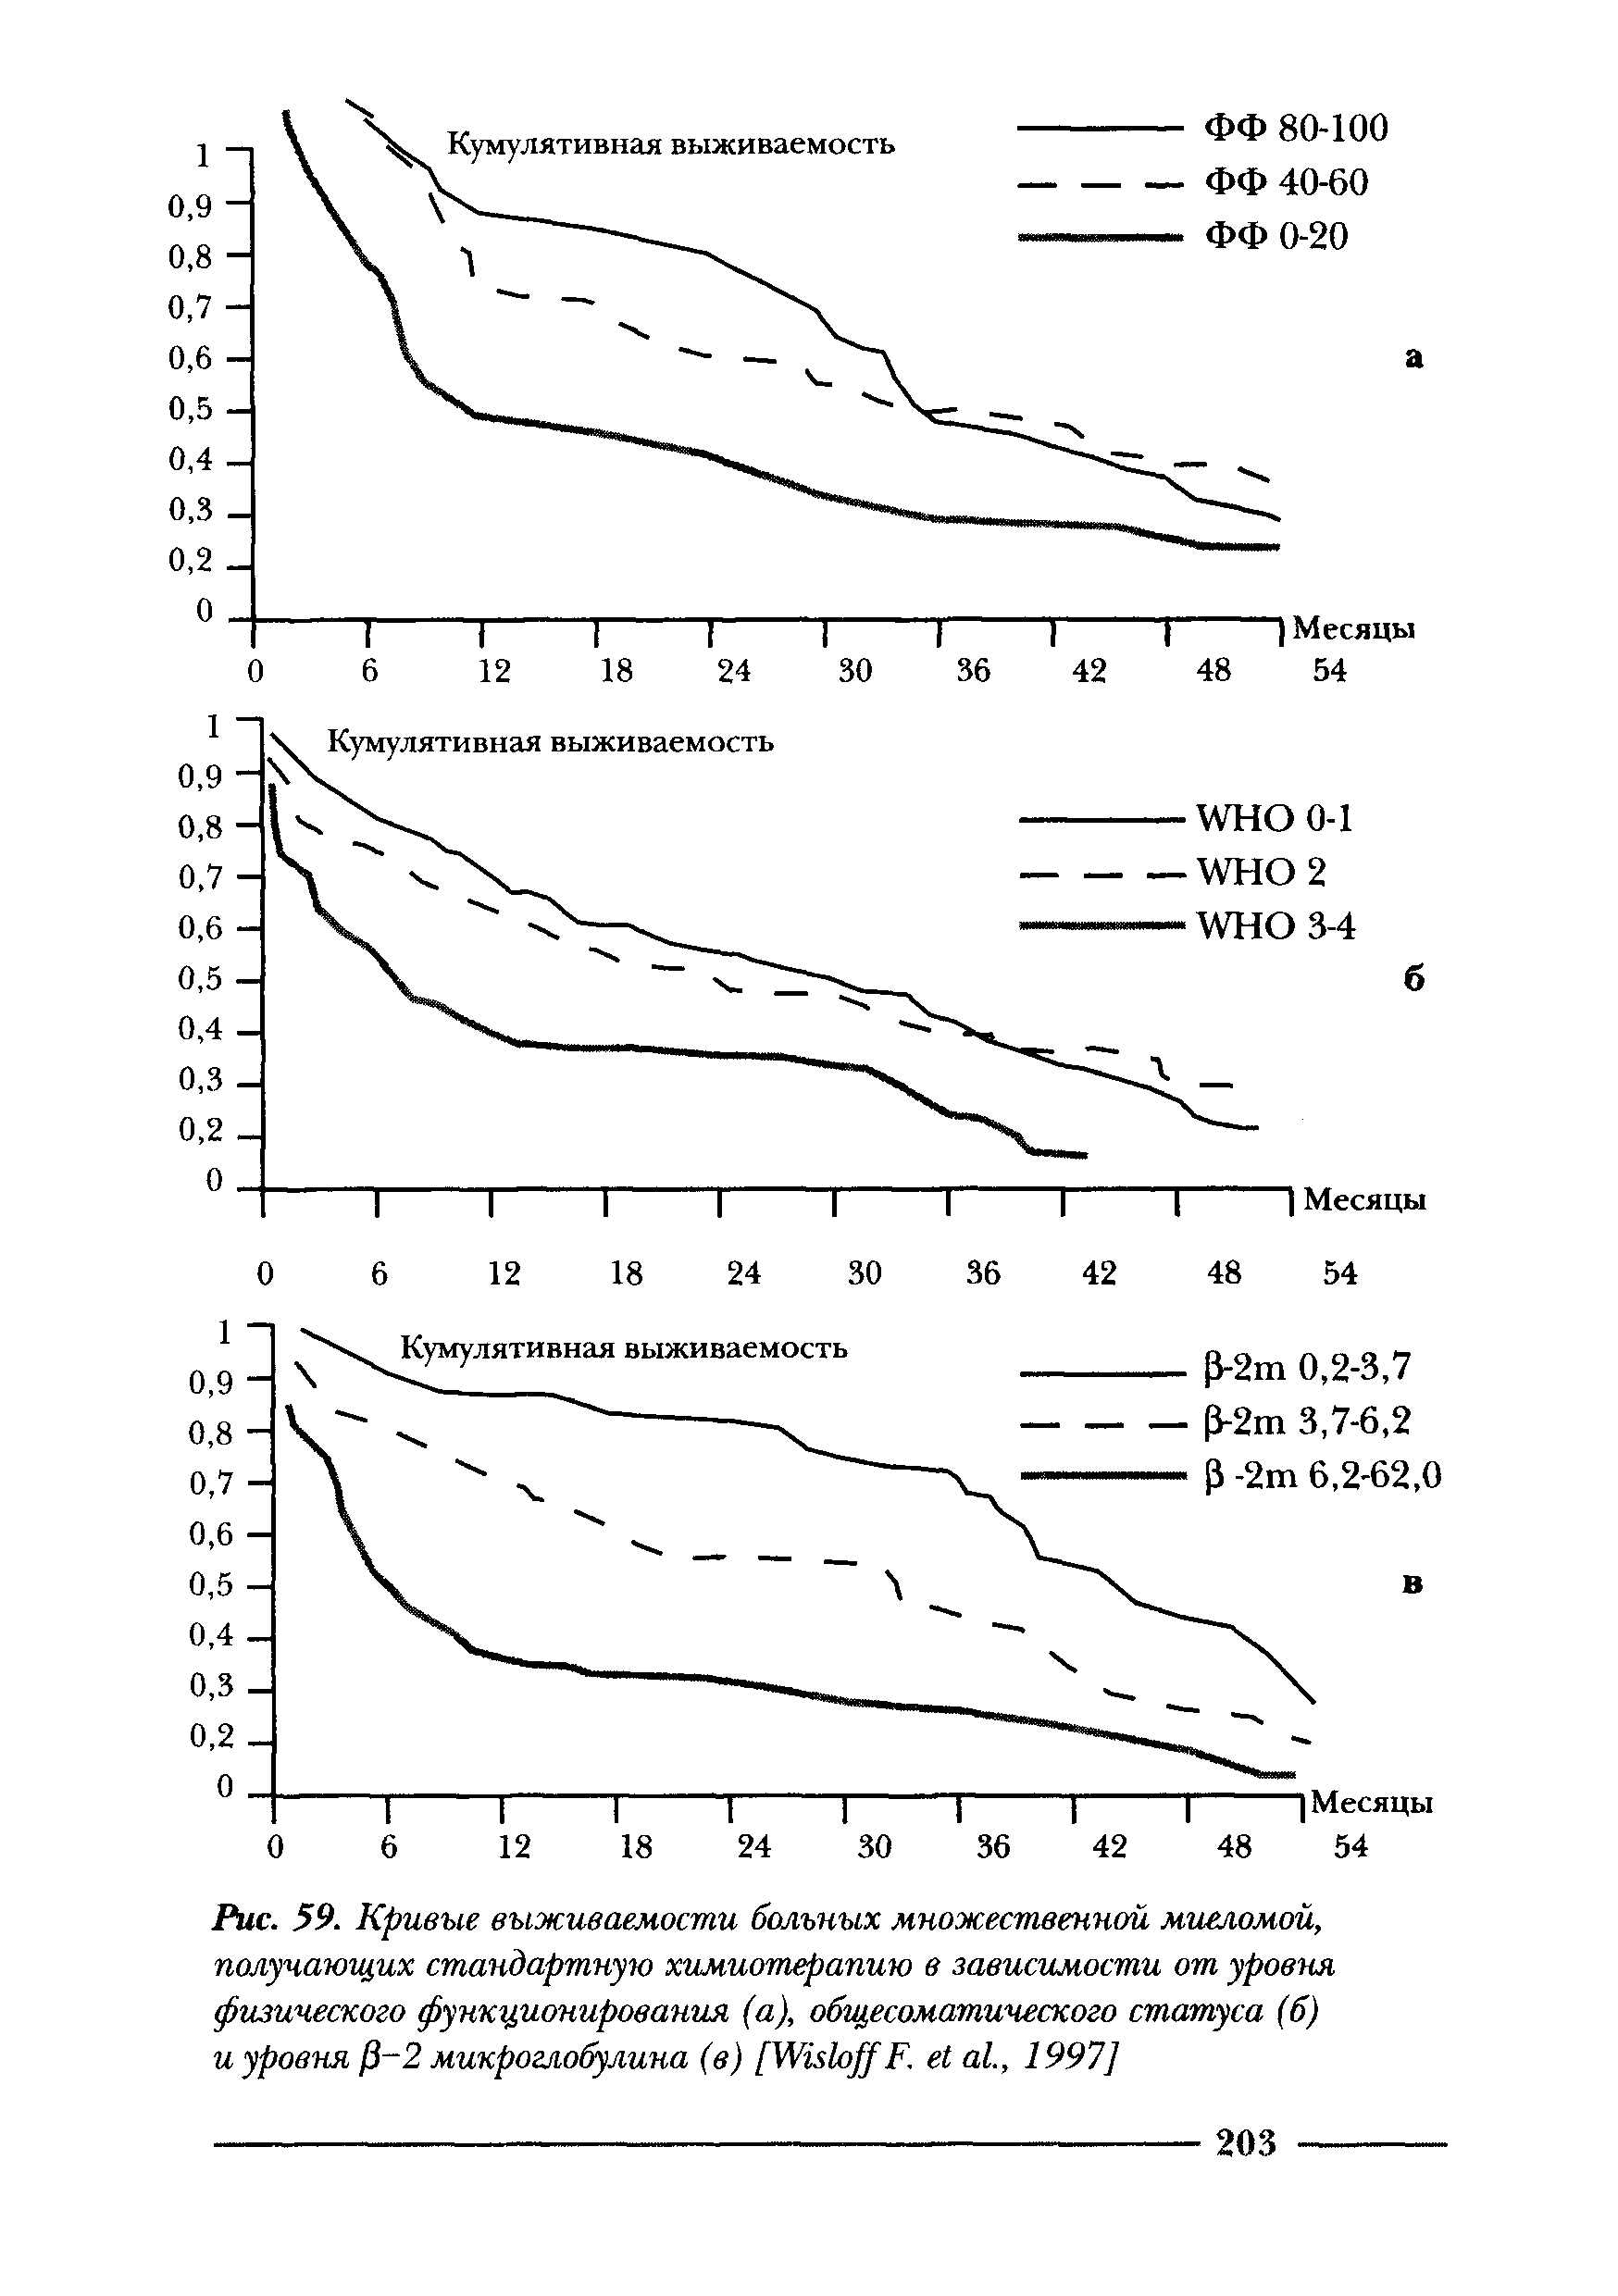 Рис. 59. Кривые выживаемости больных множественной миеломой, получающих стандартную химиотерапию в зависимости от уровня физического функционирования (а), общесоматического статуса (б) и уровня [ -2 микроглобулина (в) [УпьйфрР. а1., 1997]...